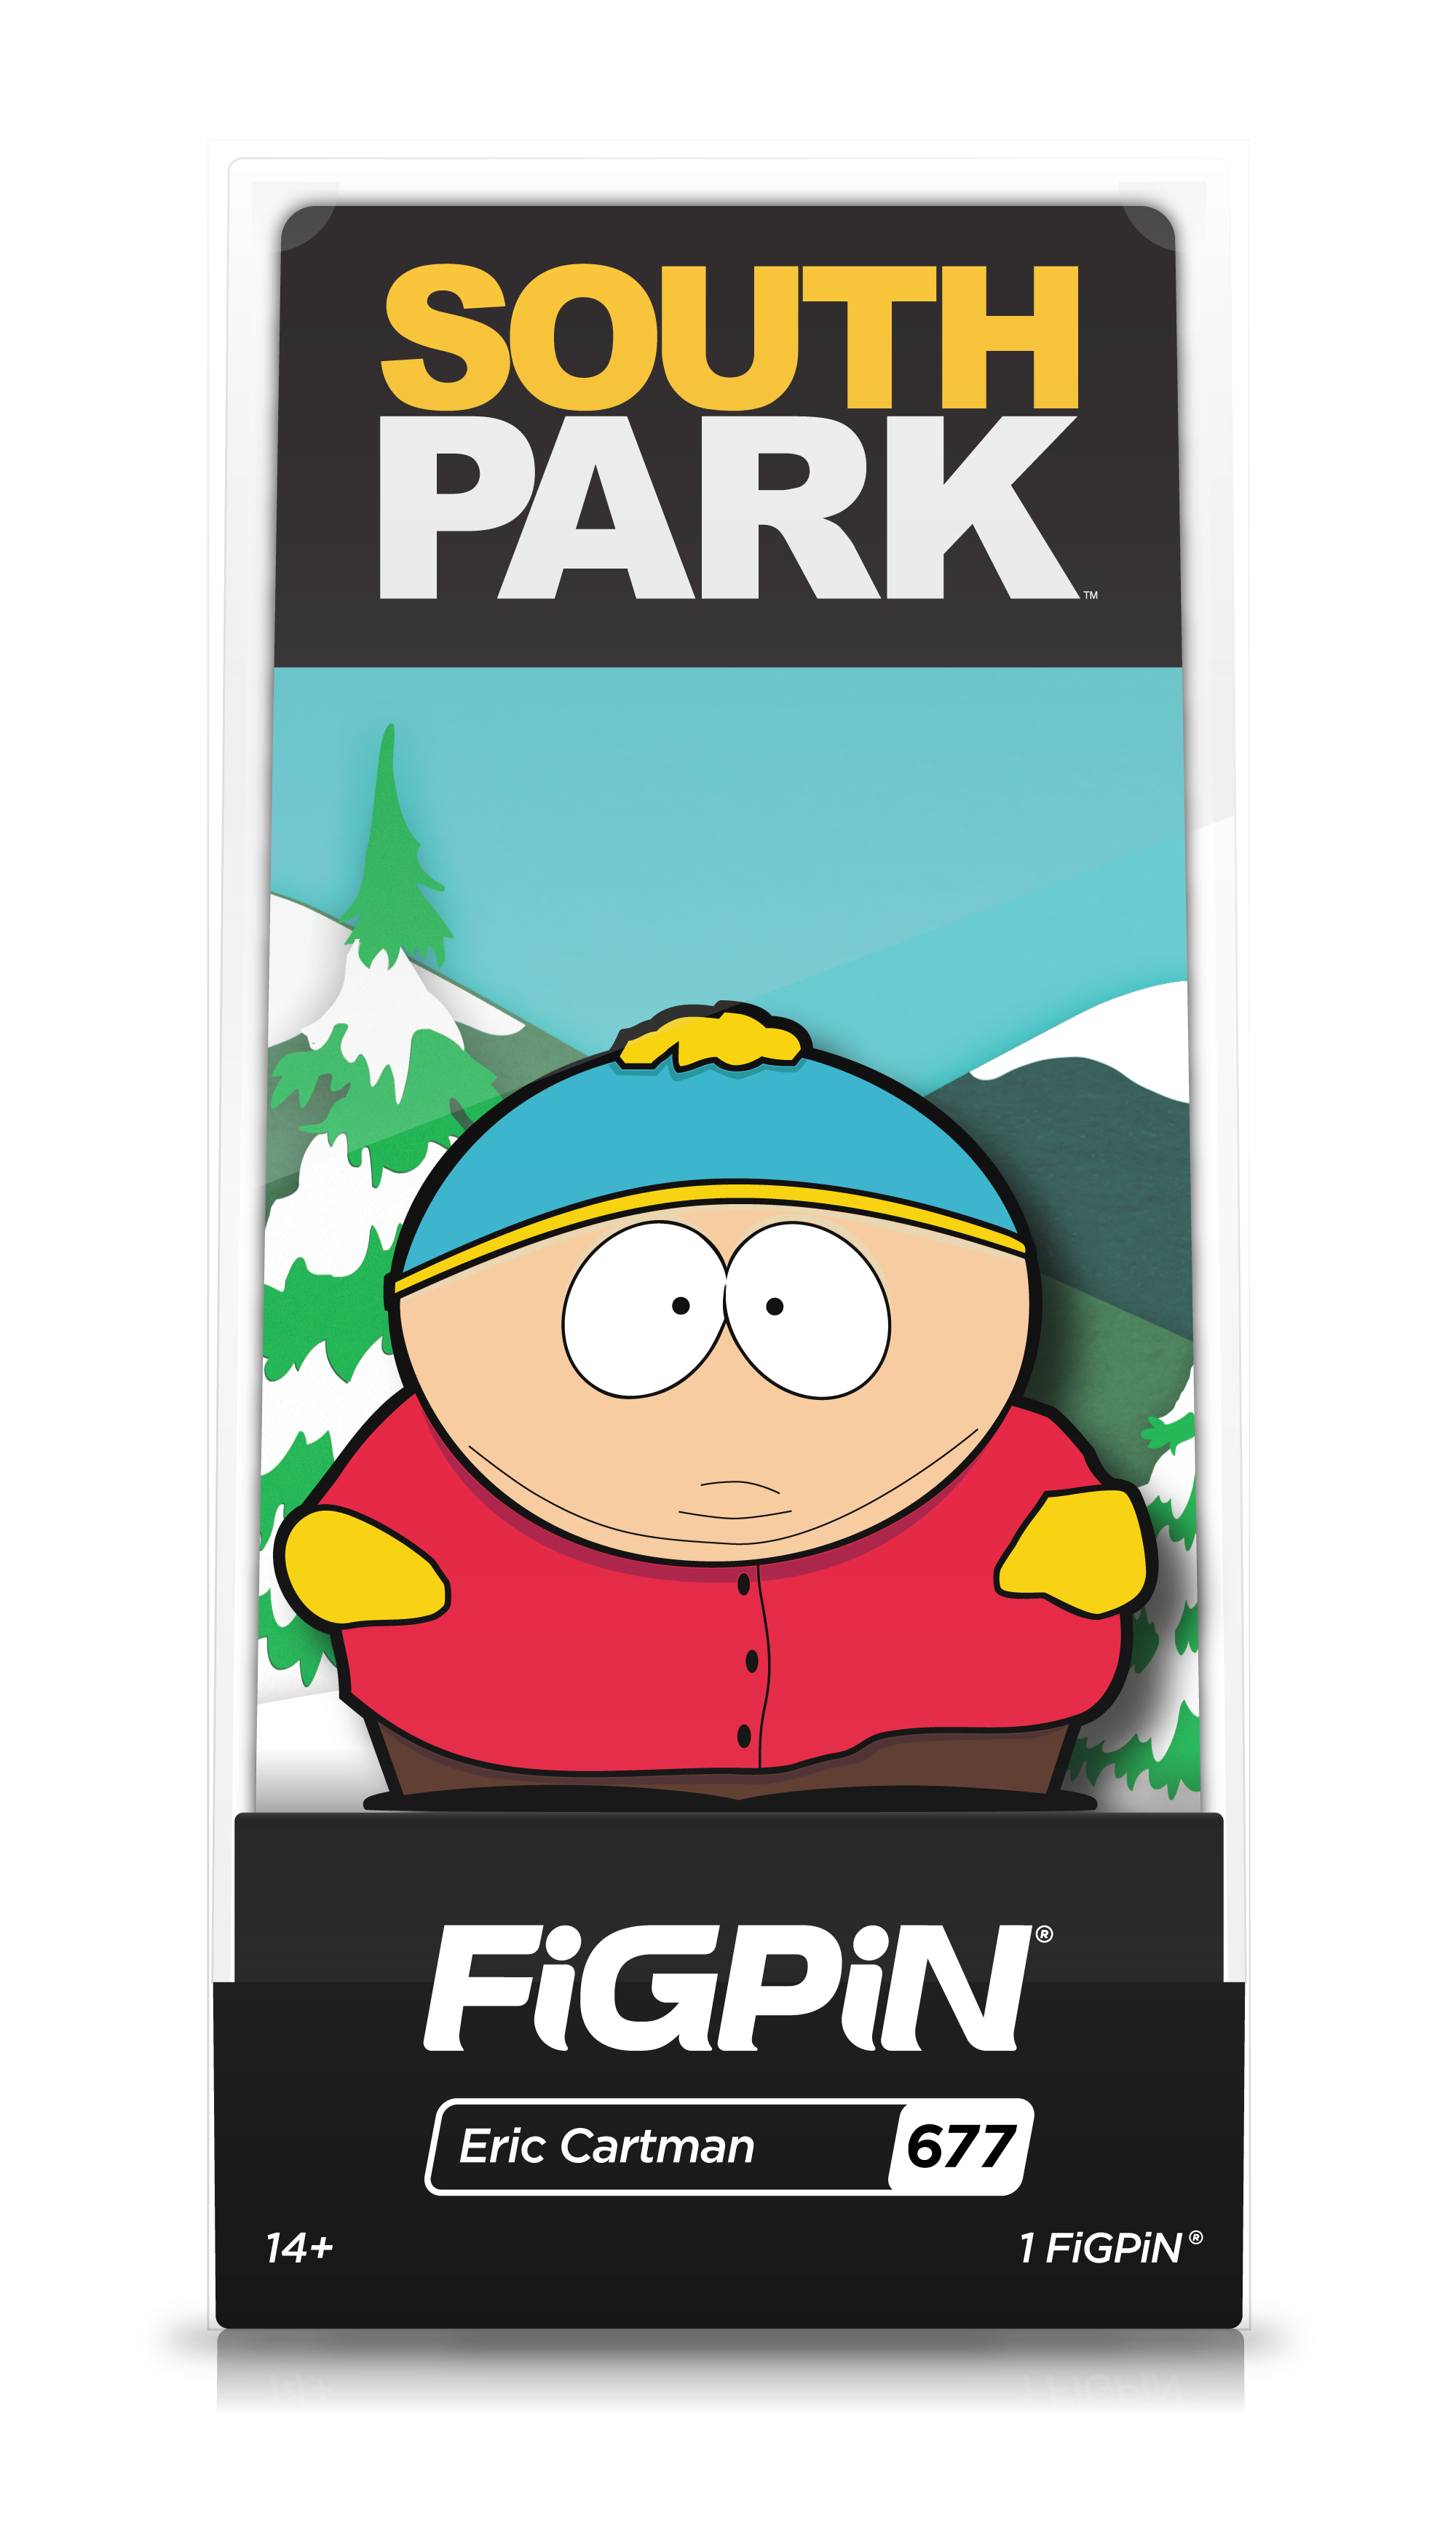 Eric Cartman (677)